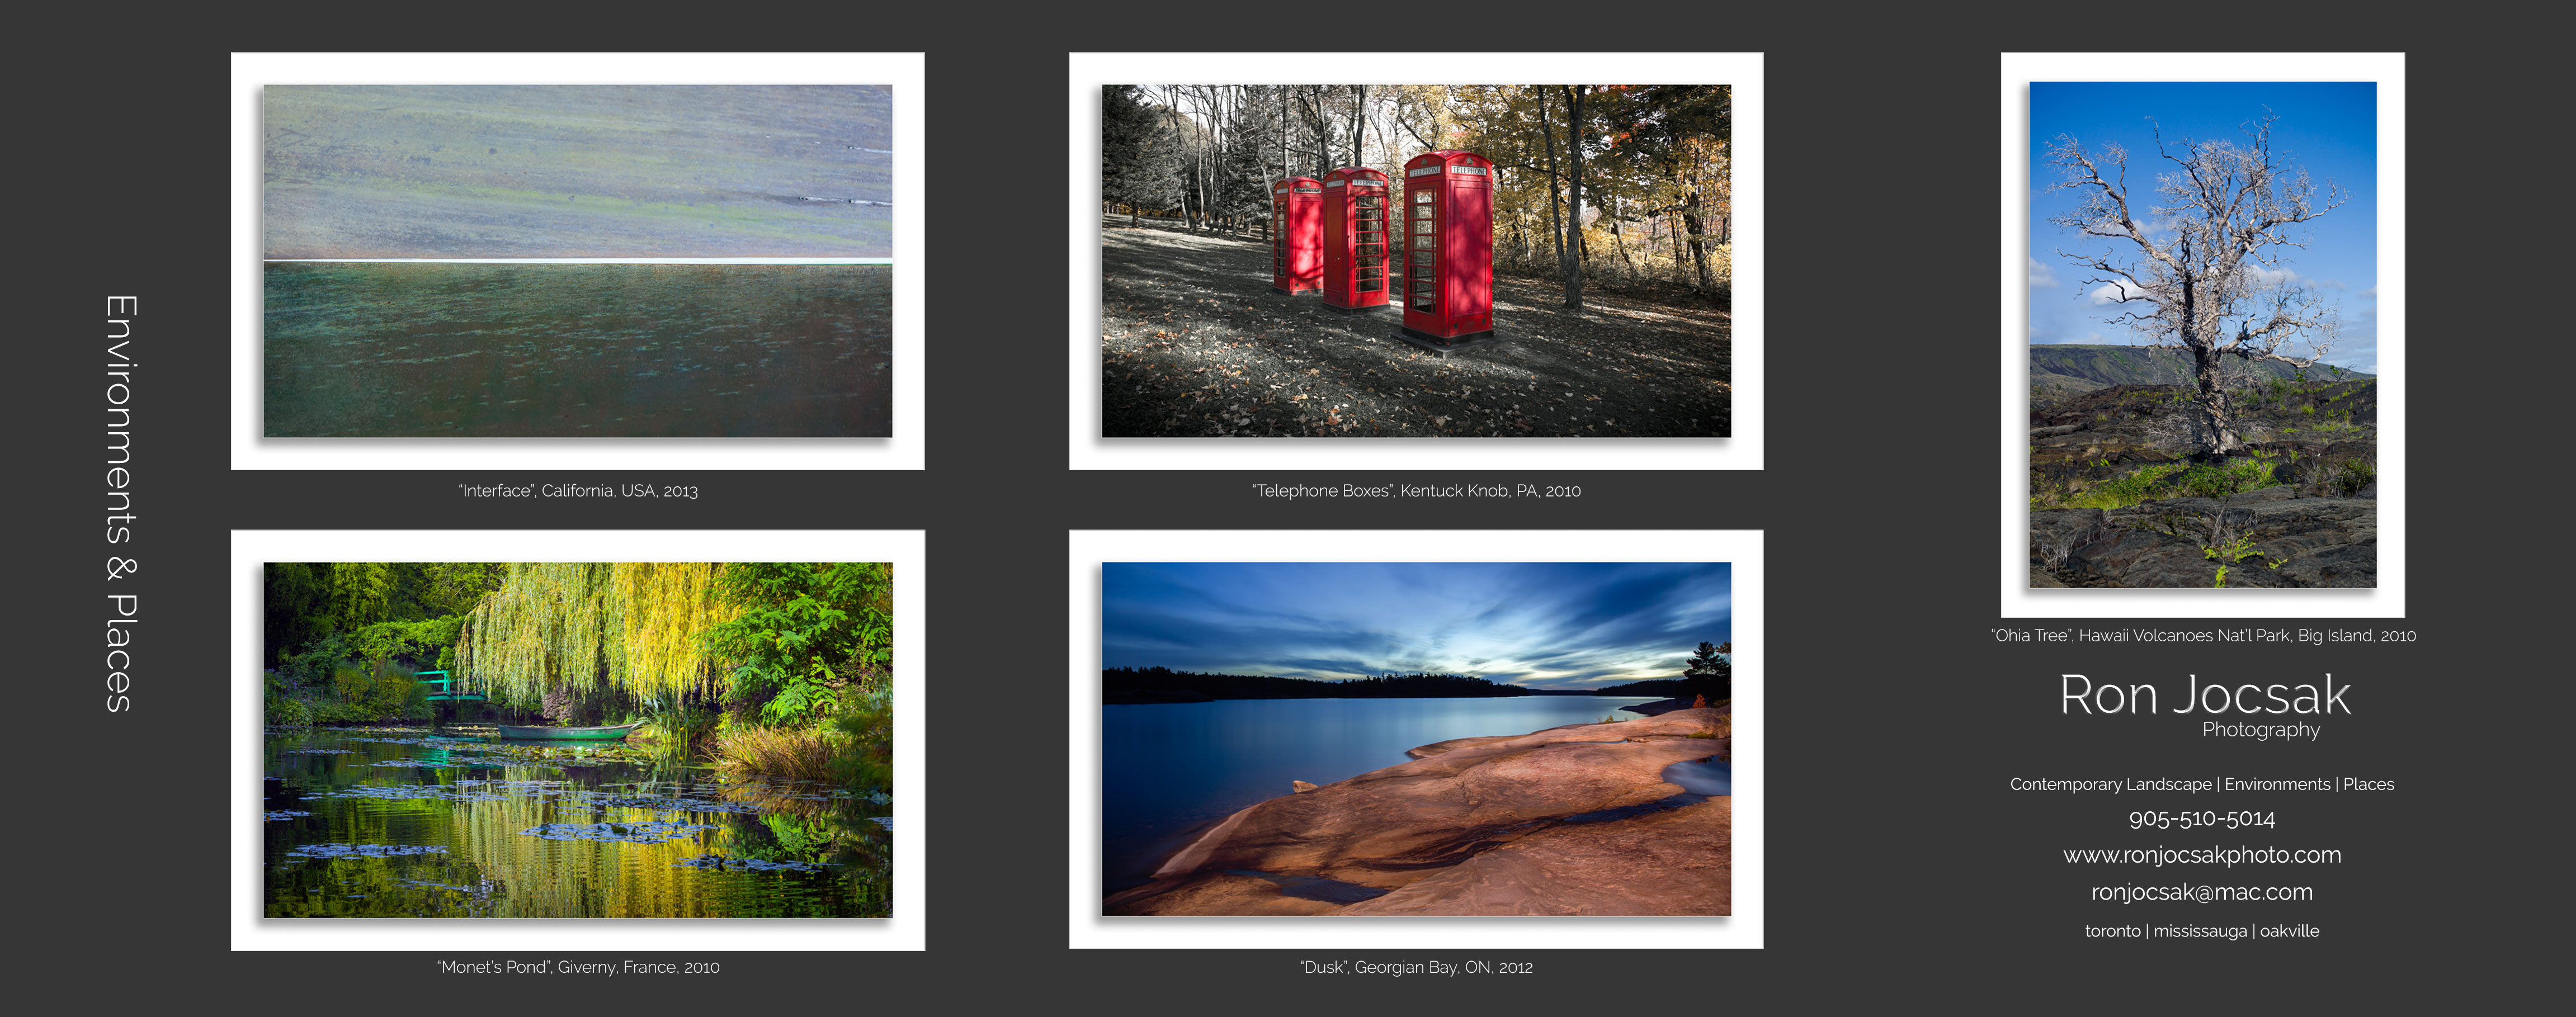 Portfolio_Flyer-Side-1-Landscapes